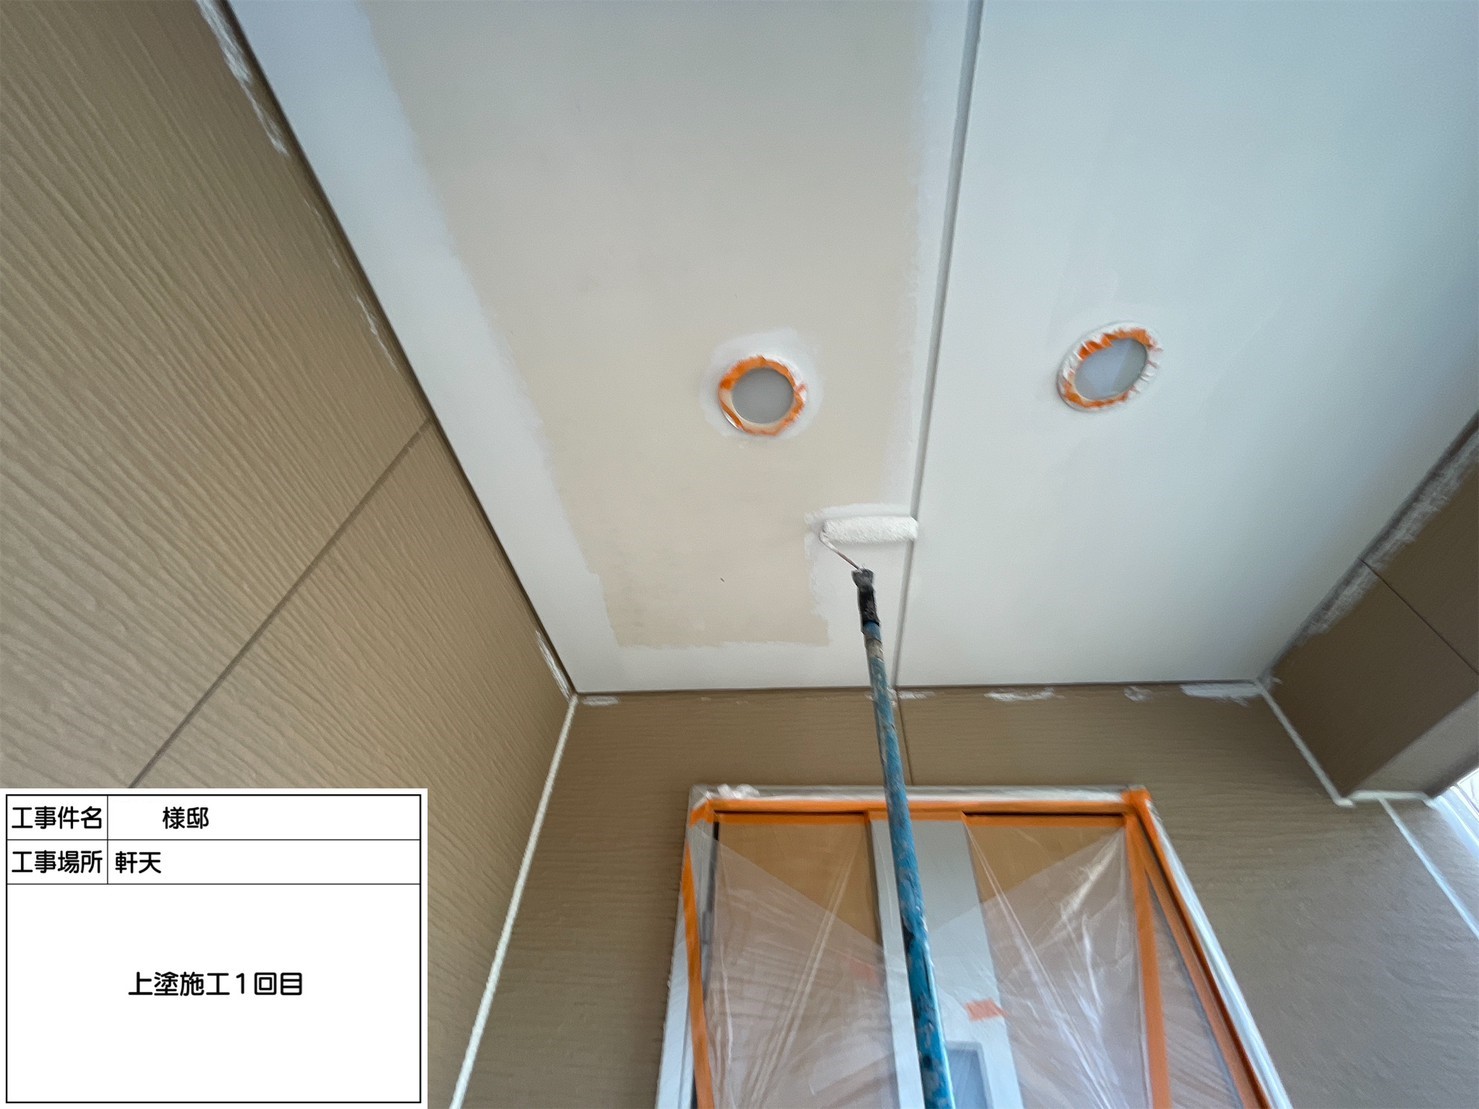 福岡県小郡市美鈴の杜のI様邸で実績のあるシリコン塗料を使用して屋根と外壁の塗装を行っています。7/7着工です。【ホームページより】